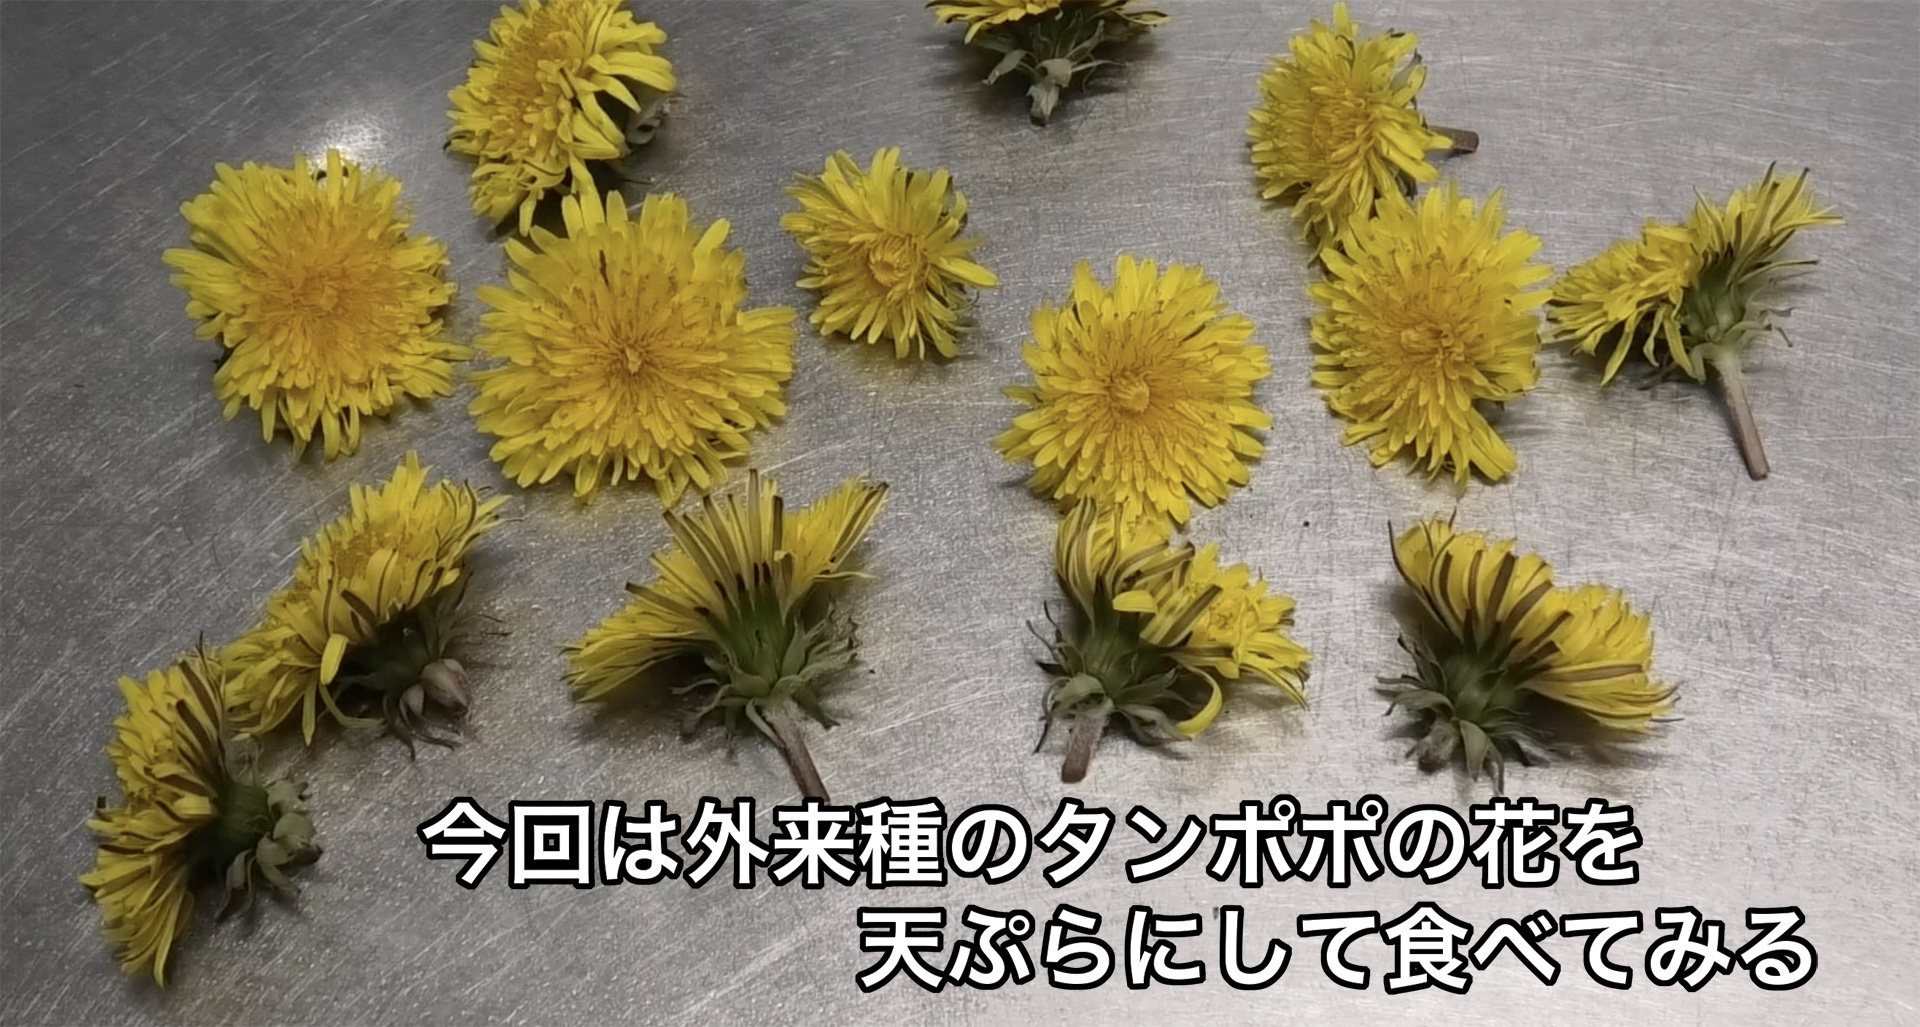 セイヨウタンポポの花で天ぷらを作る